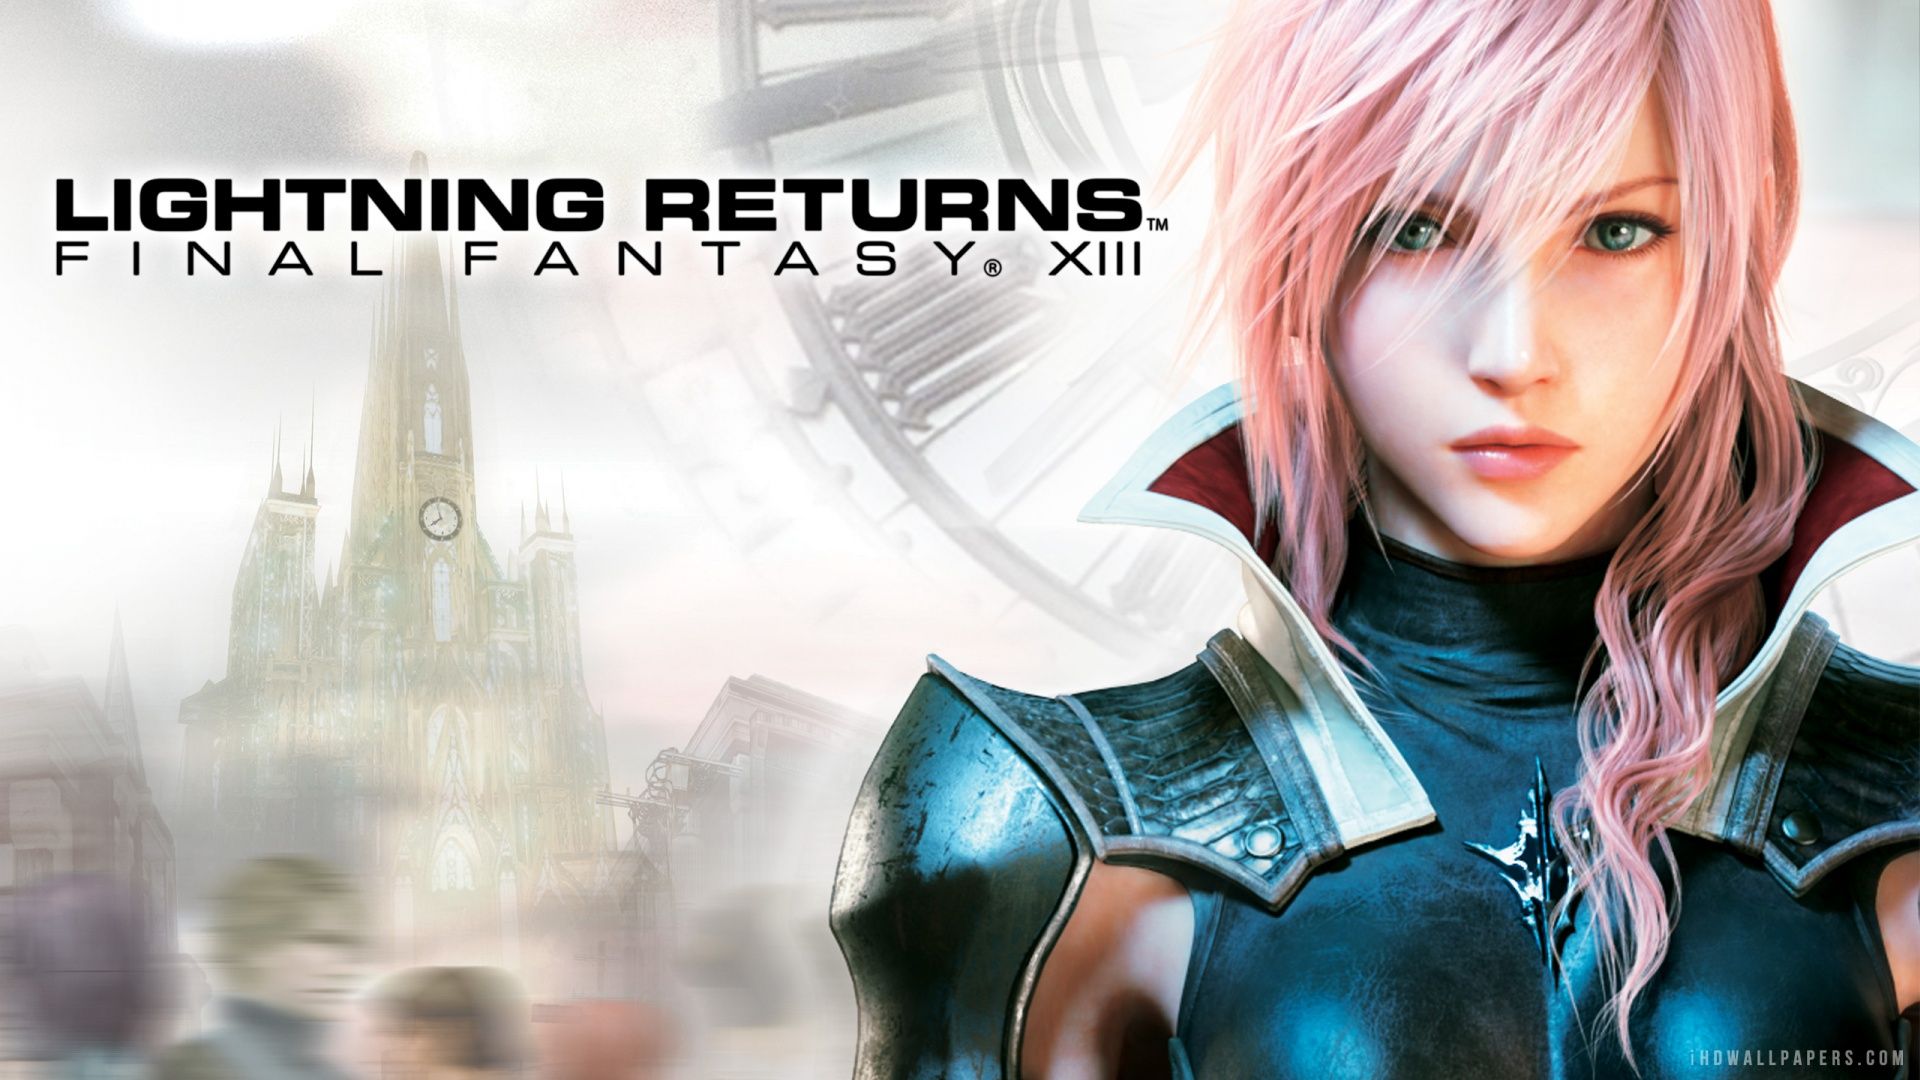 Lightning Returns Final Fantasy XIII 2014 HD Wallpaper - iHD ...